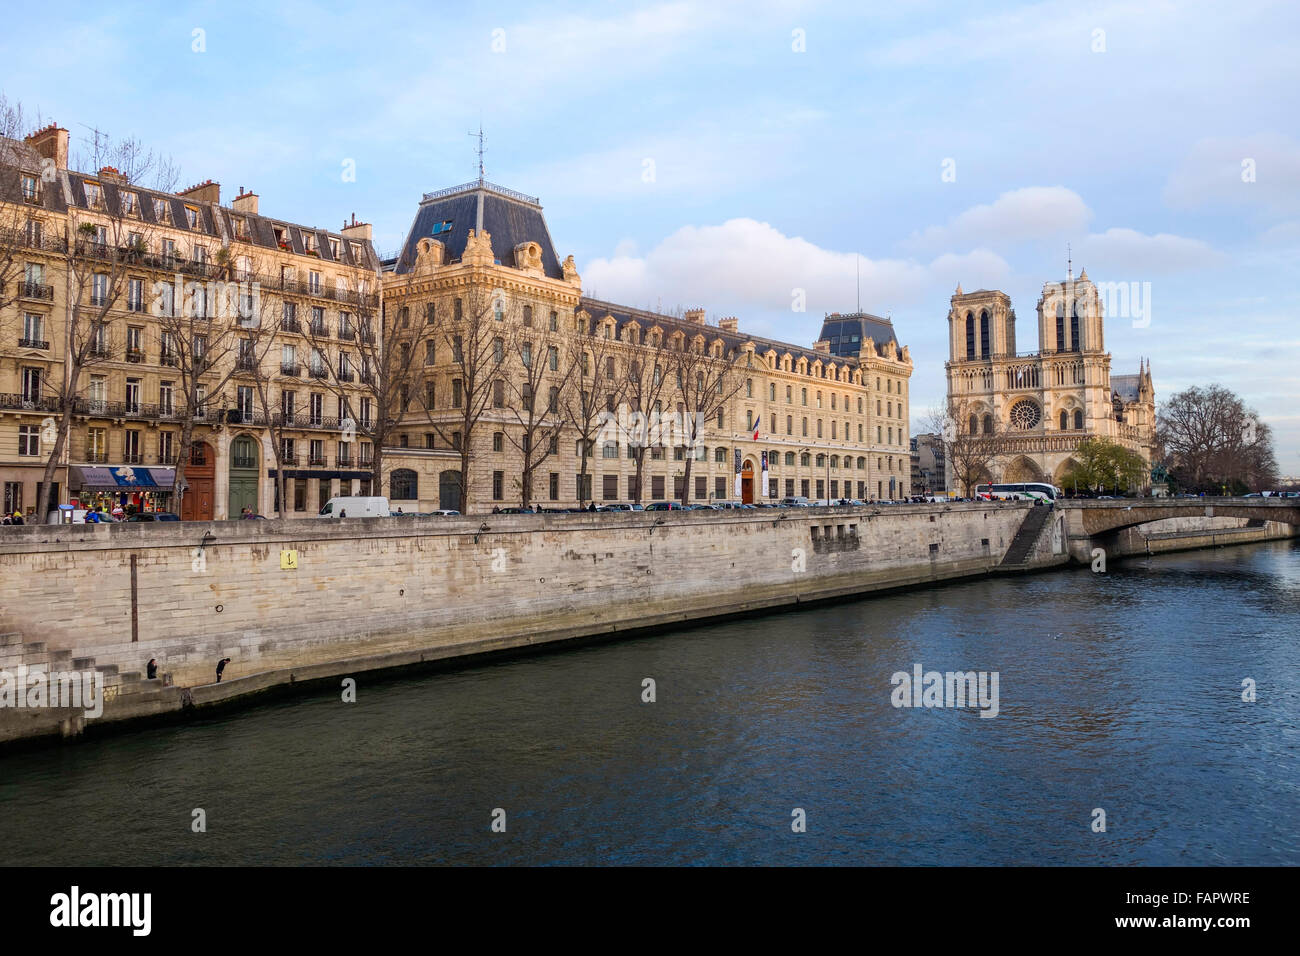 Seine river with Notre Dame, Notre-Dame, ile de la cite, Paris France. Stock Photo